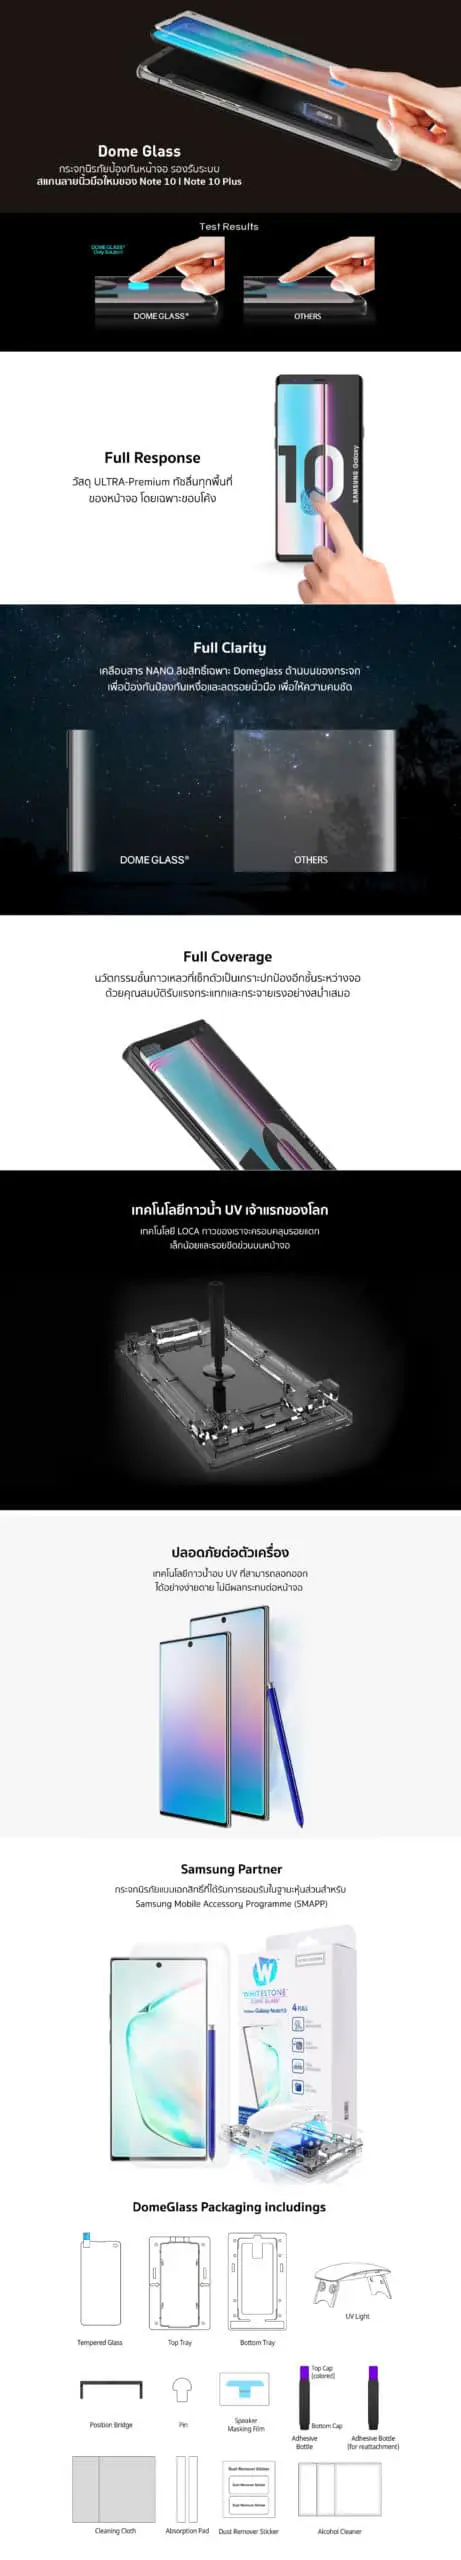 ฟิล์มกระจกนิรภัย Whitestone Dome Glass - Samsung Galaxy Note 10